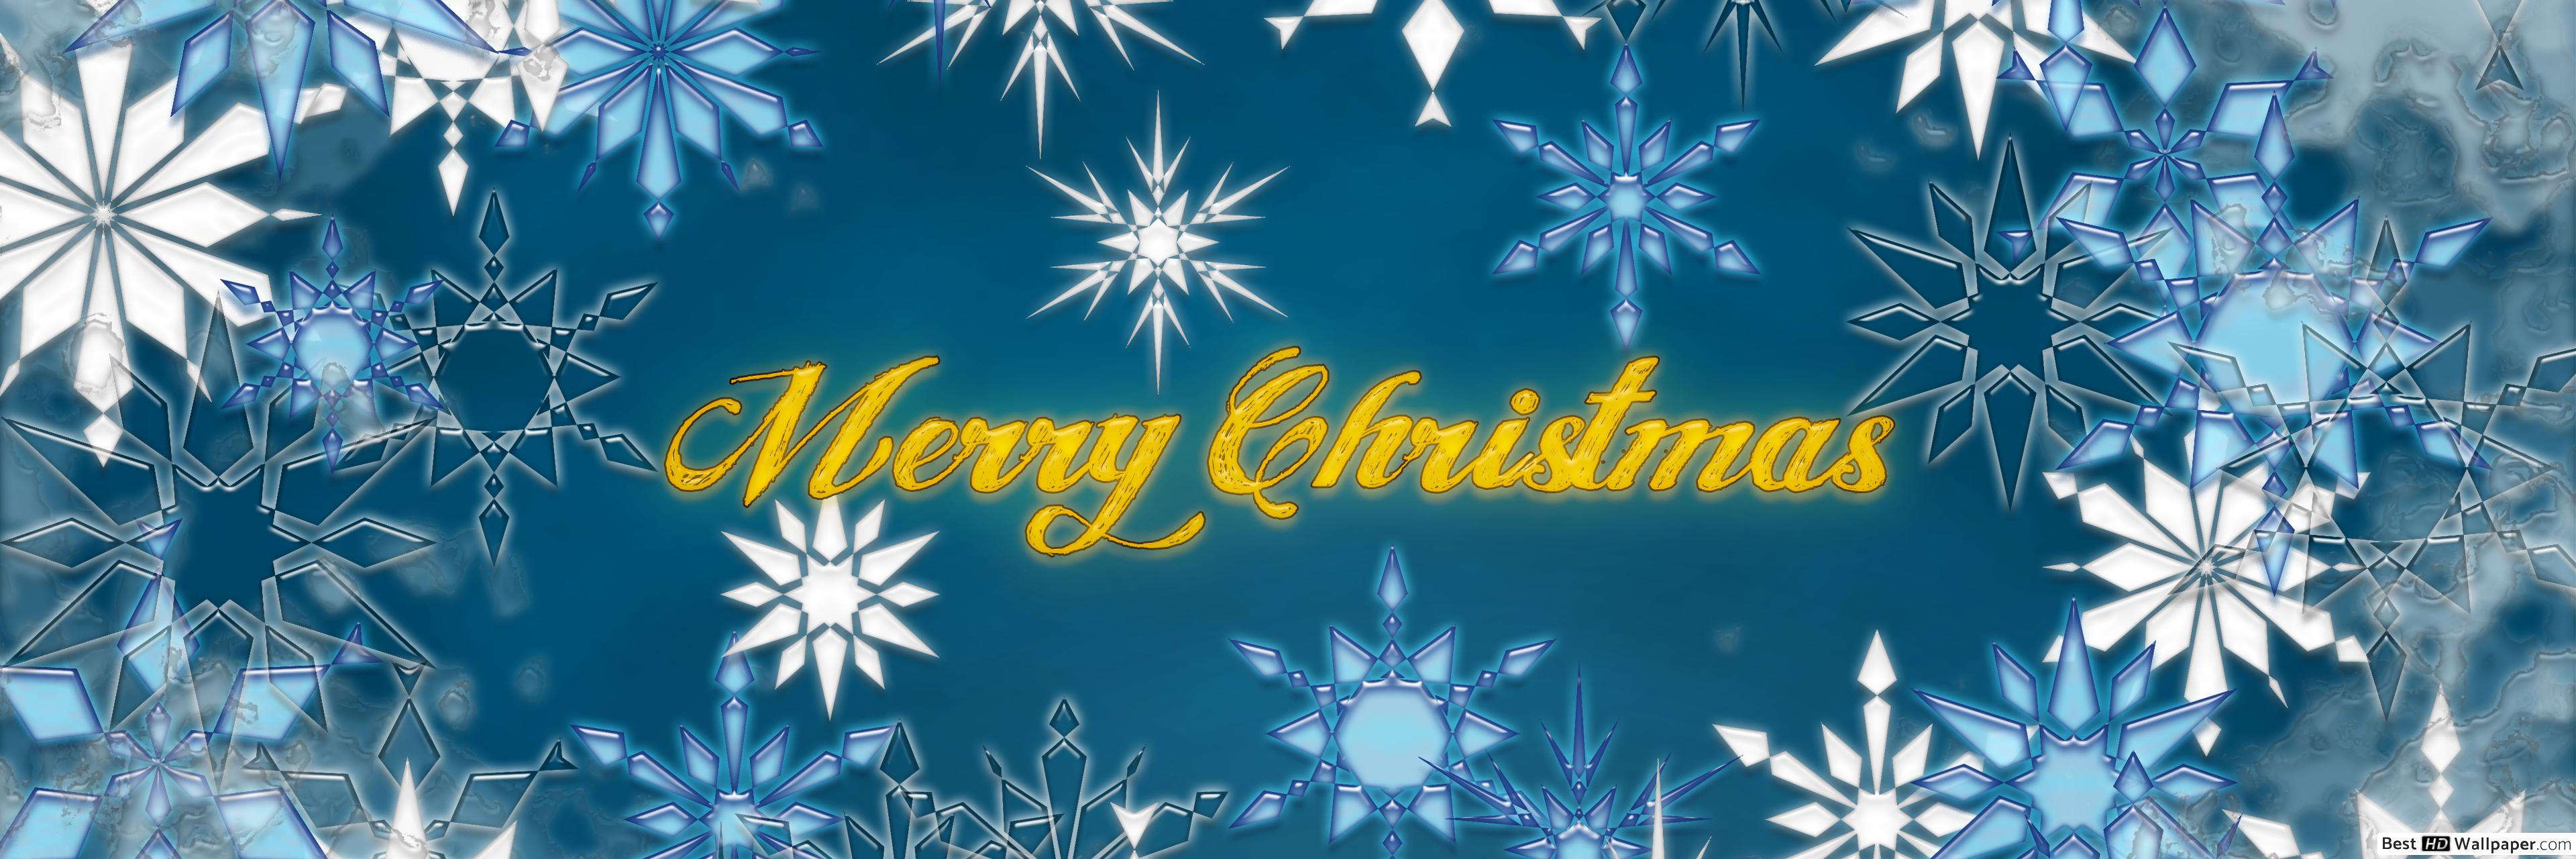 Merry Christmas Twitter Header - HD Wallpaper 